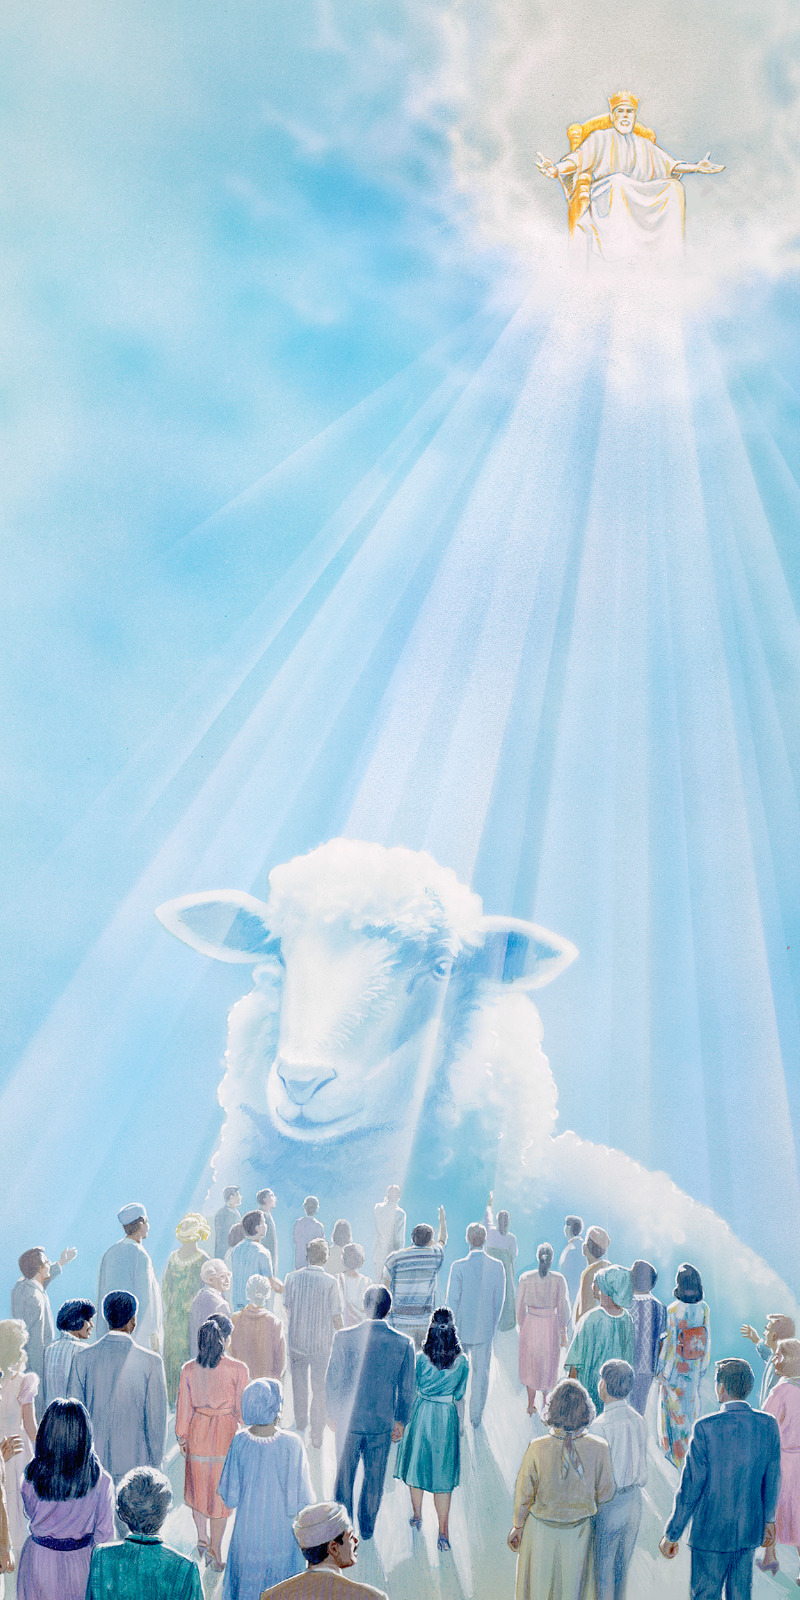 Jezus zit op zijn verheven troon en degenen die getrouw zijn worden aangemerkt als schapen